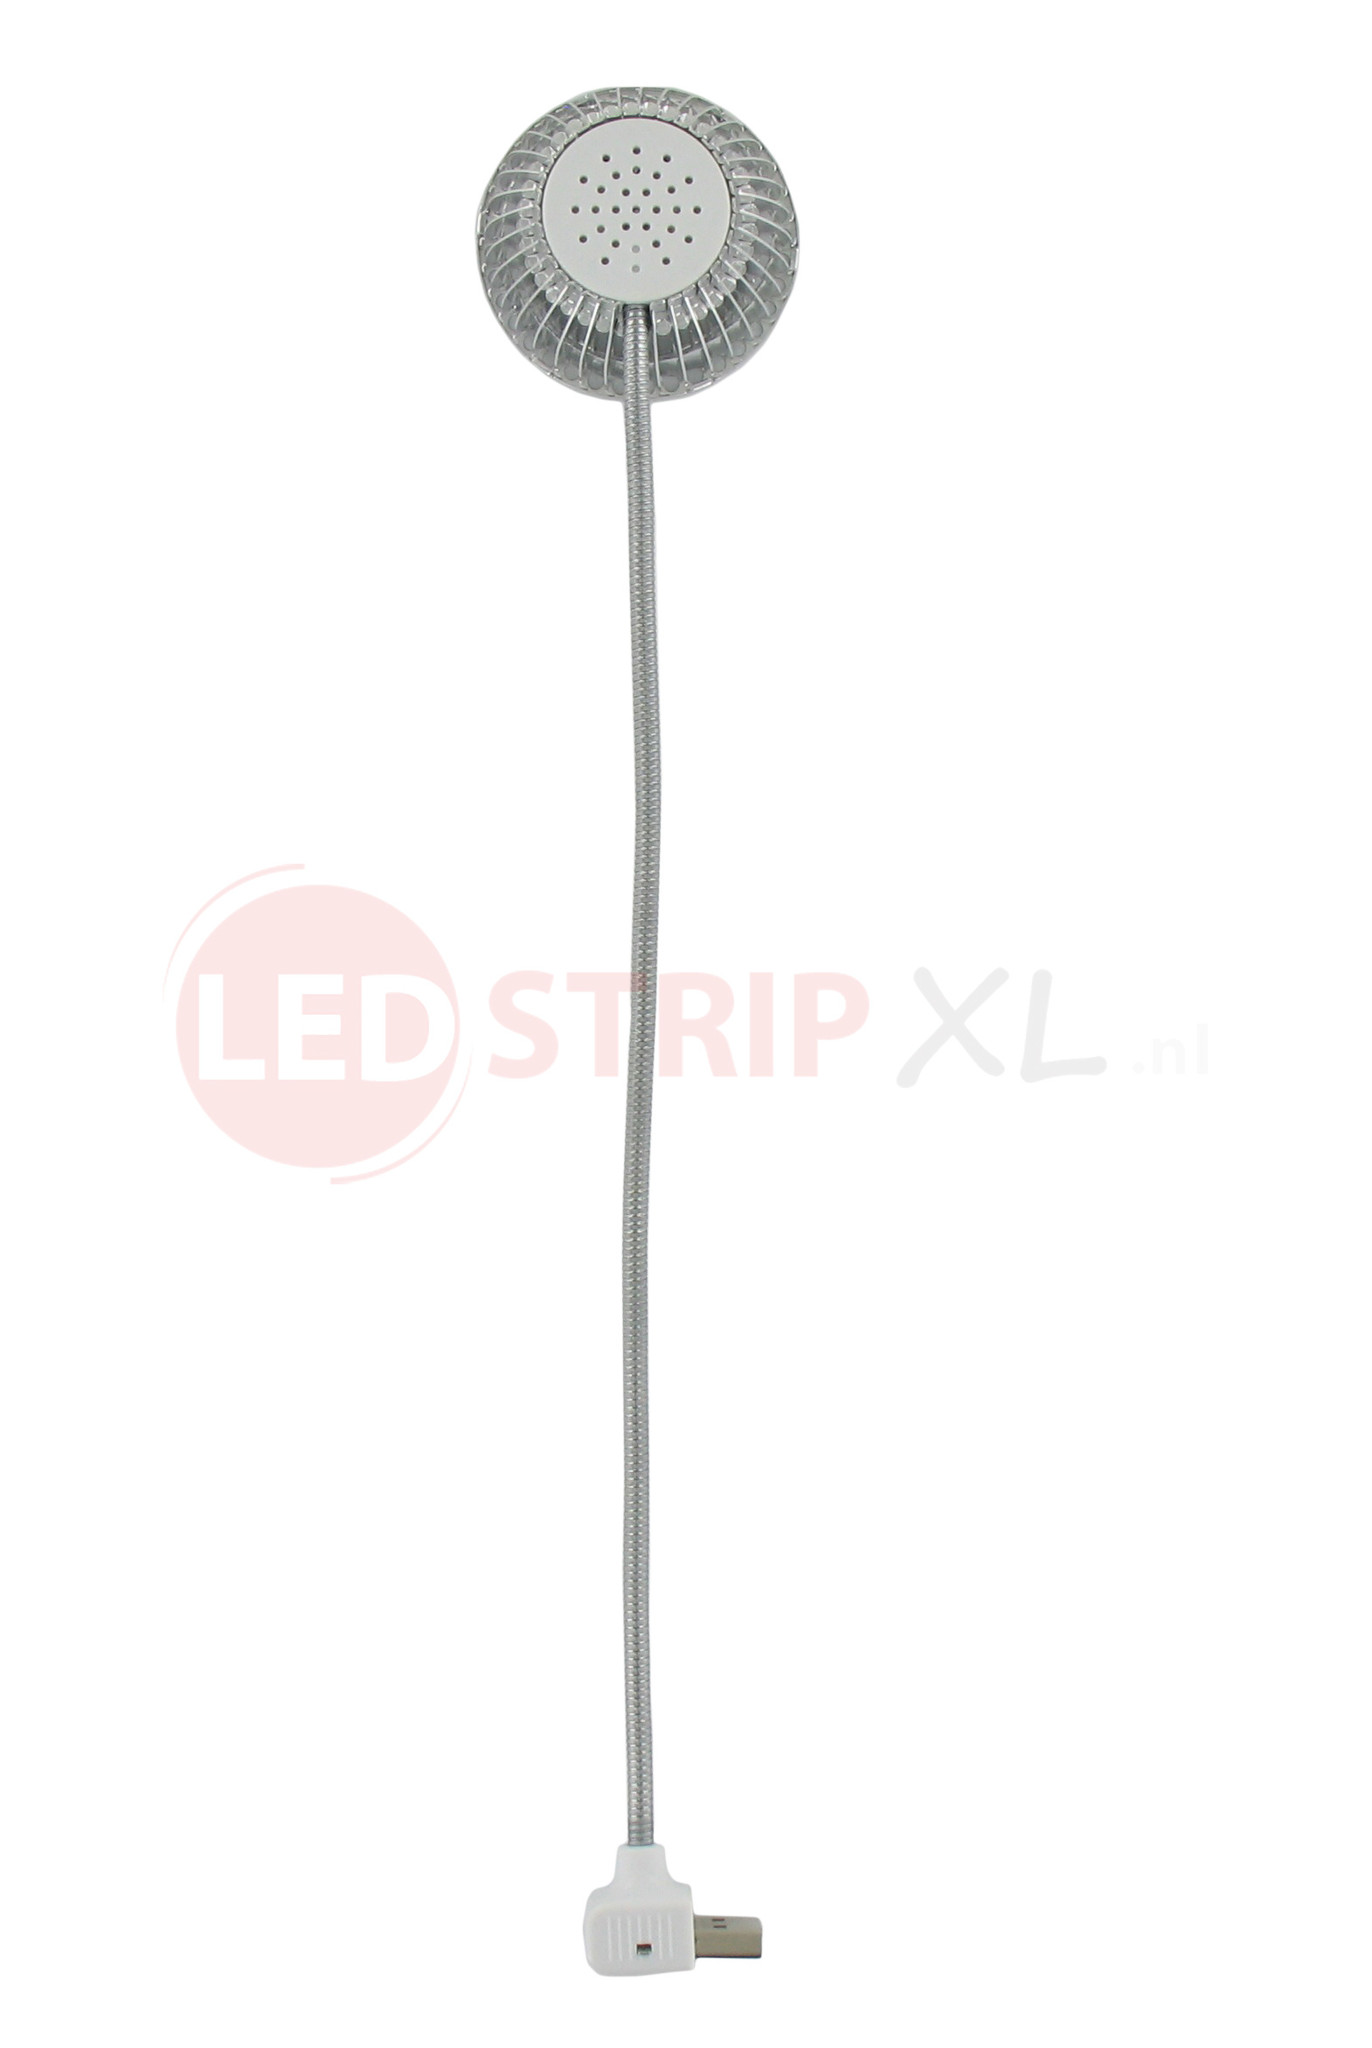 USB mini LED-lampje / leeslampje - helder wit spiraalkabel - LEDStripXL